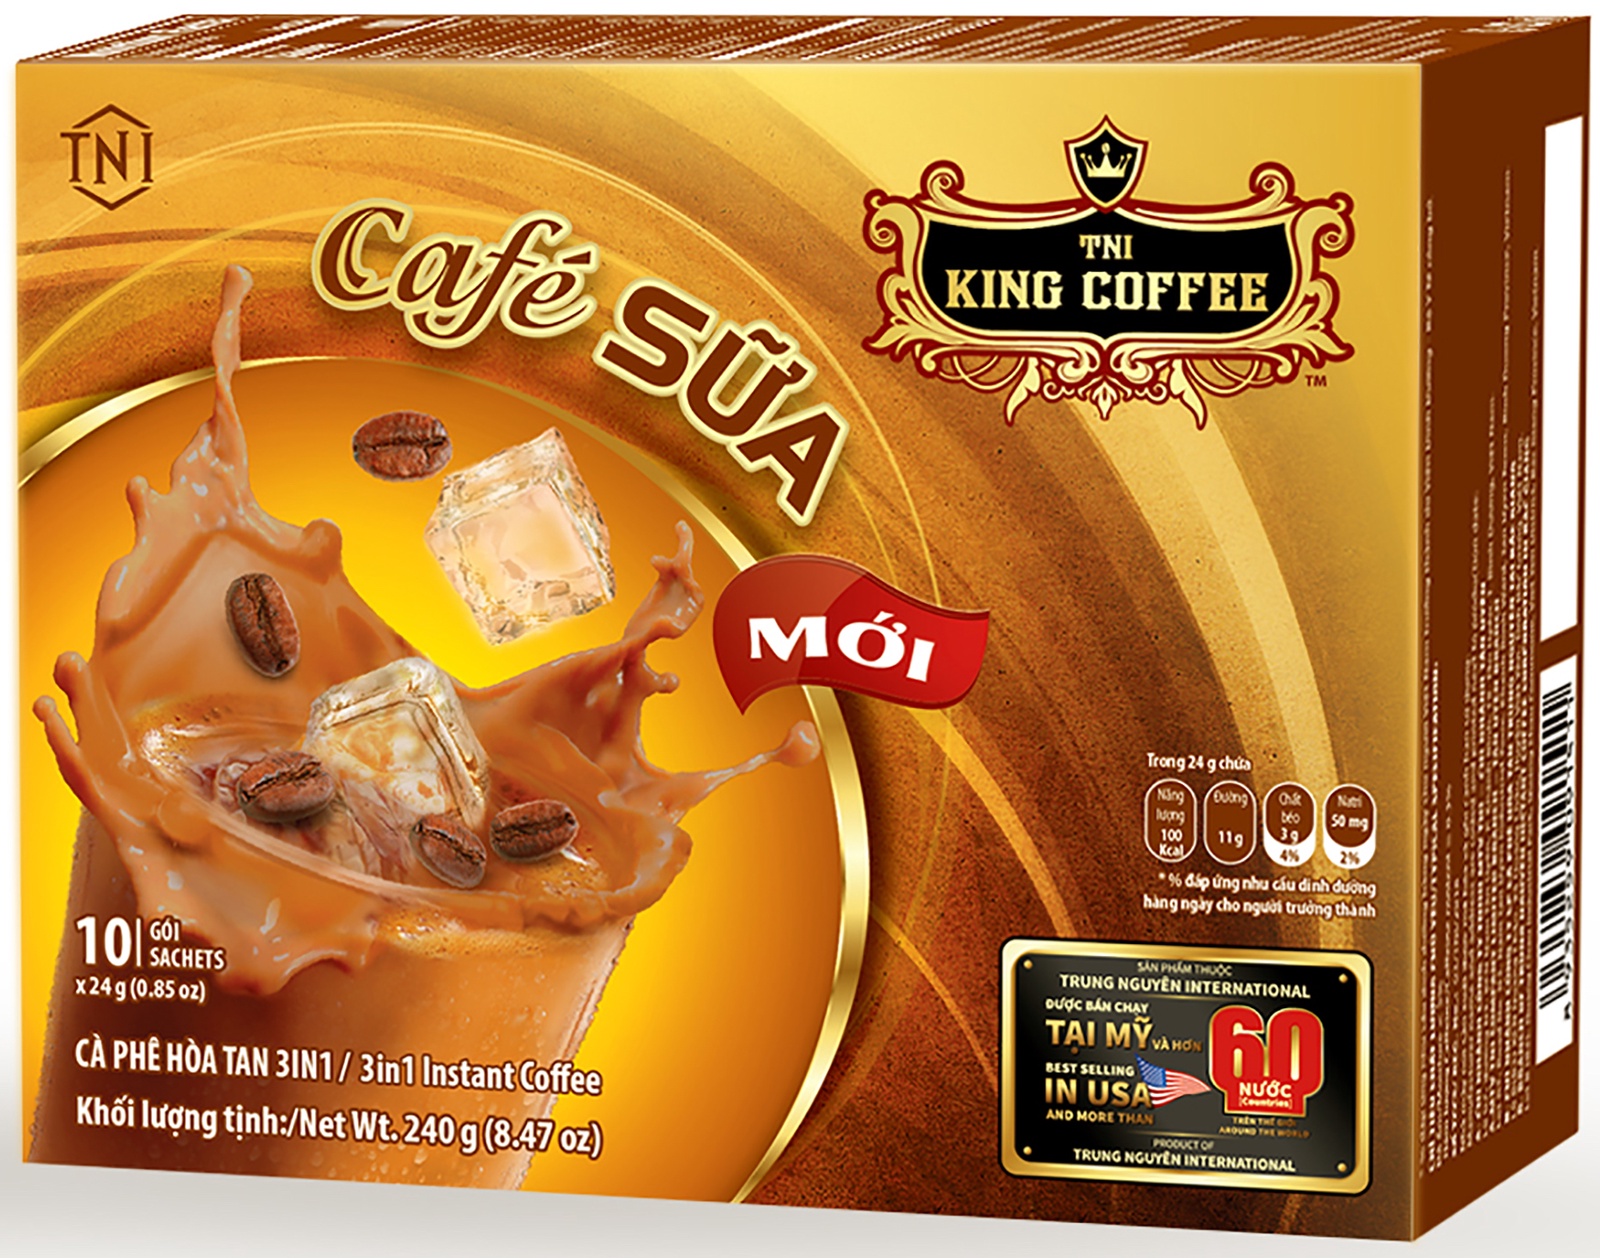 Сливки растворимым кофе. King Coffee Cafe sua 3in1 Coffee. Кофейный напиток 3в1 King Coffee. Кинг кофе Вьетнам 3 в 1 sua. Кофе 3 в 1 King instant.